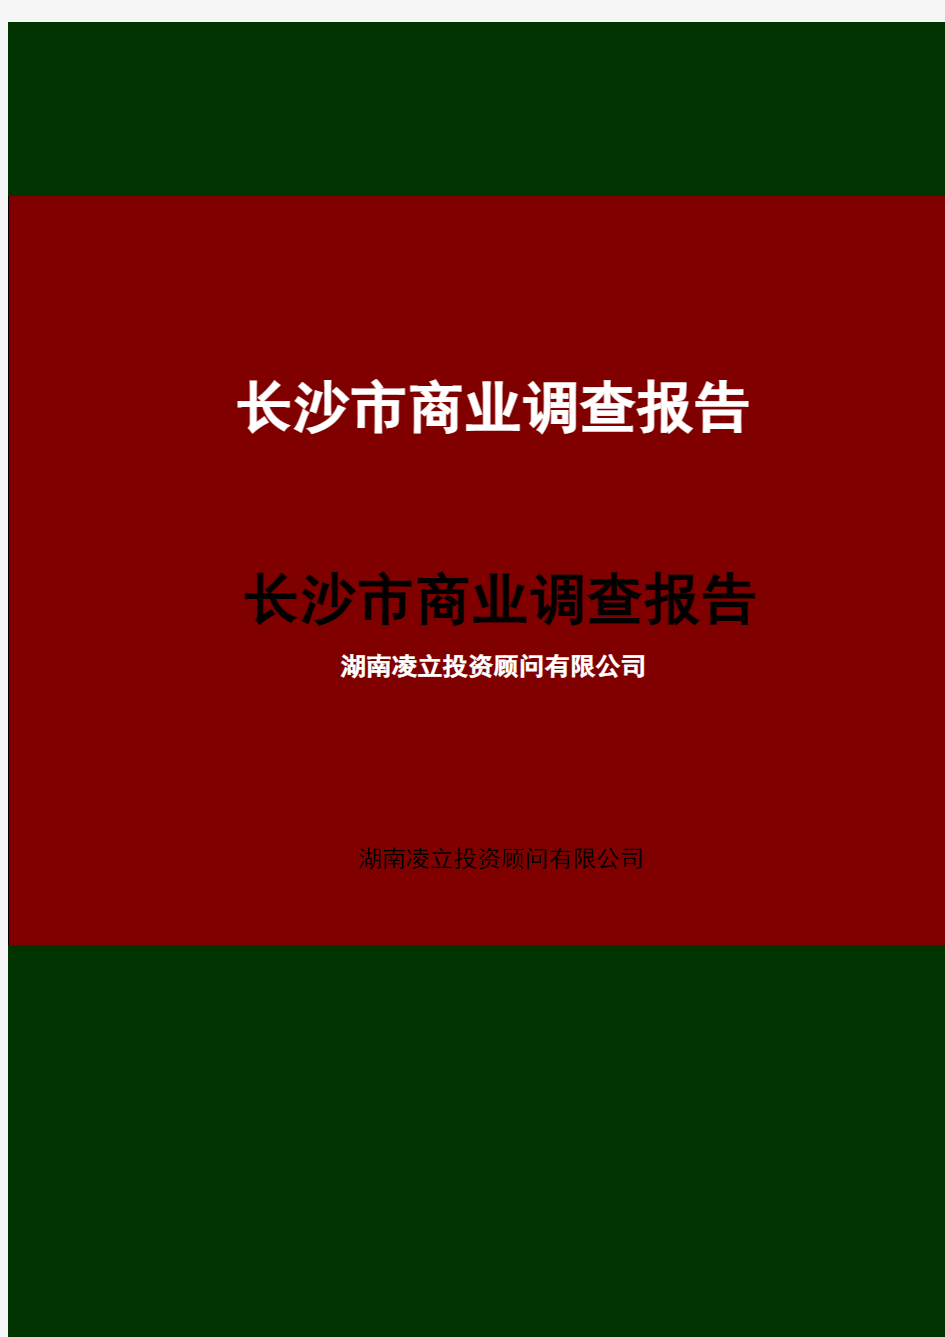 湖南长沙商业市场调查报告(44p)